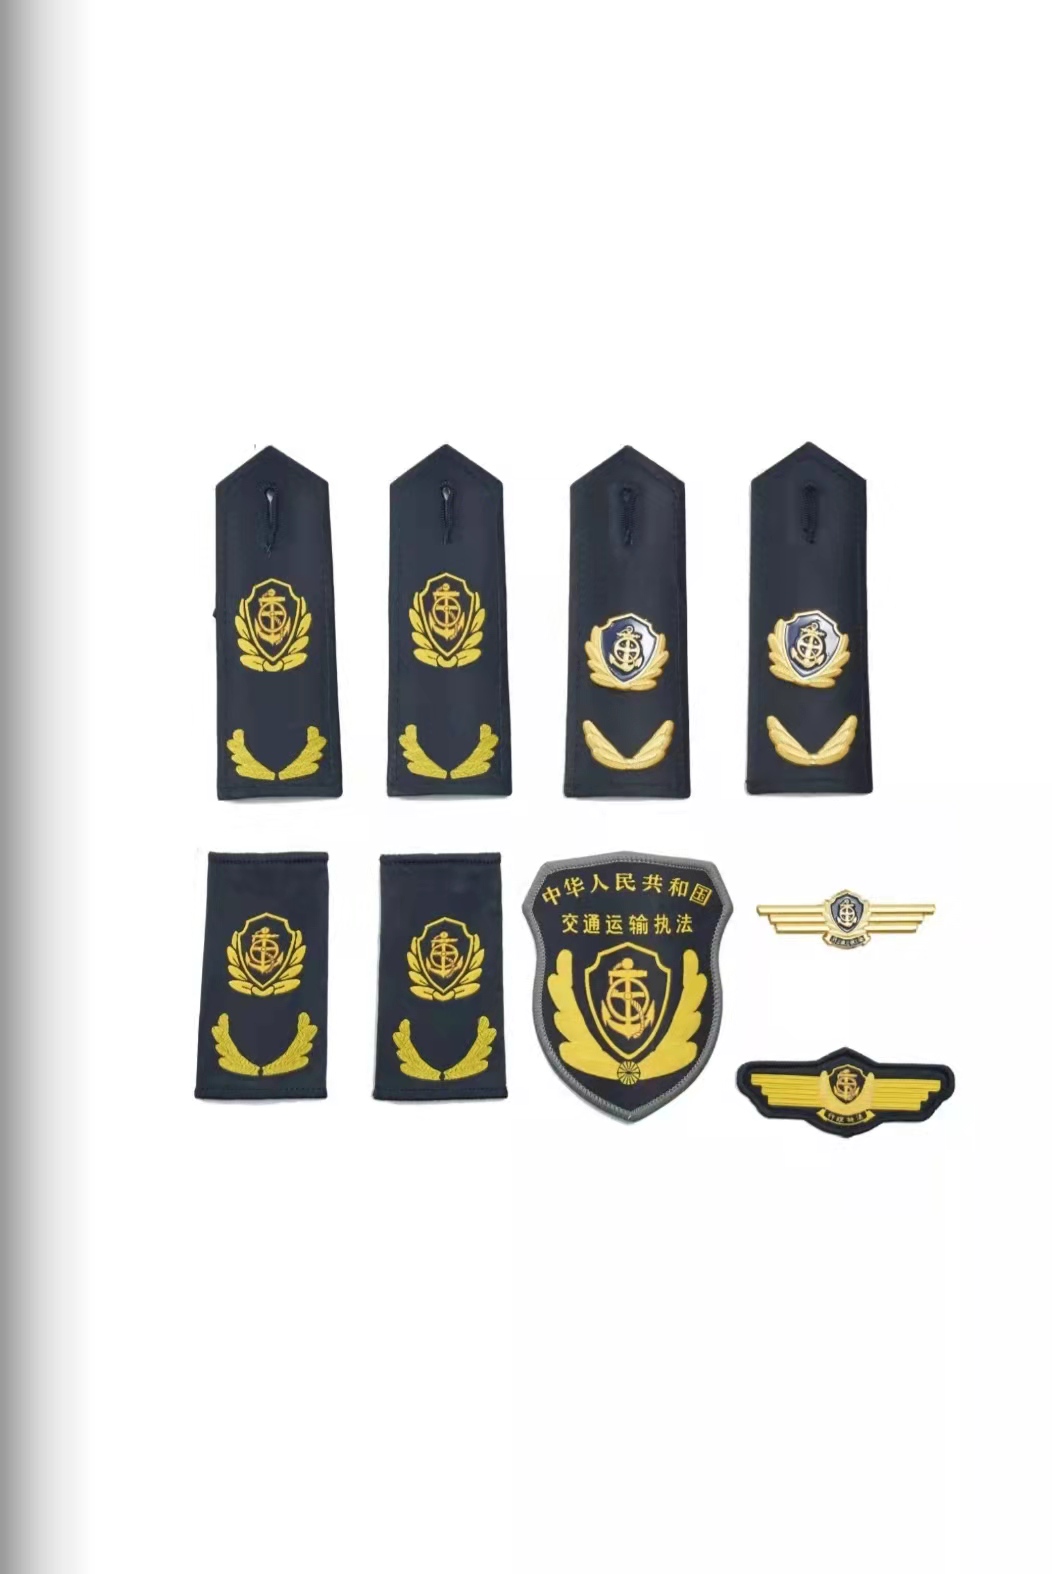 甘肃六部门统一交通运输执法服装标志